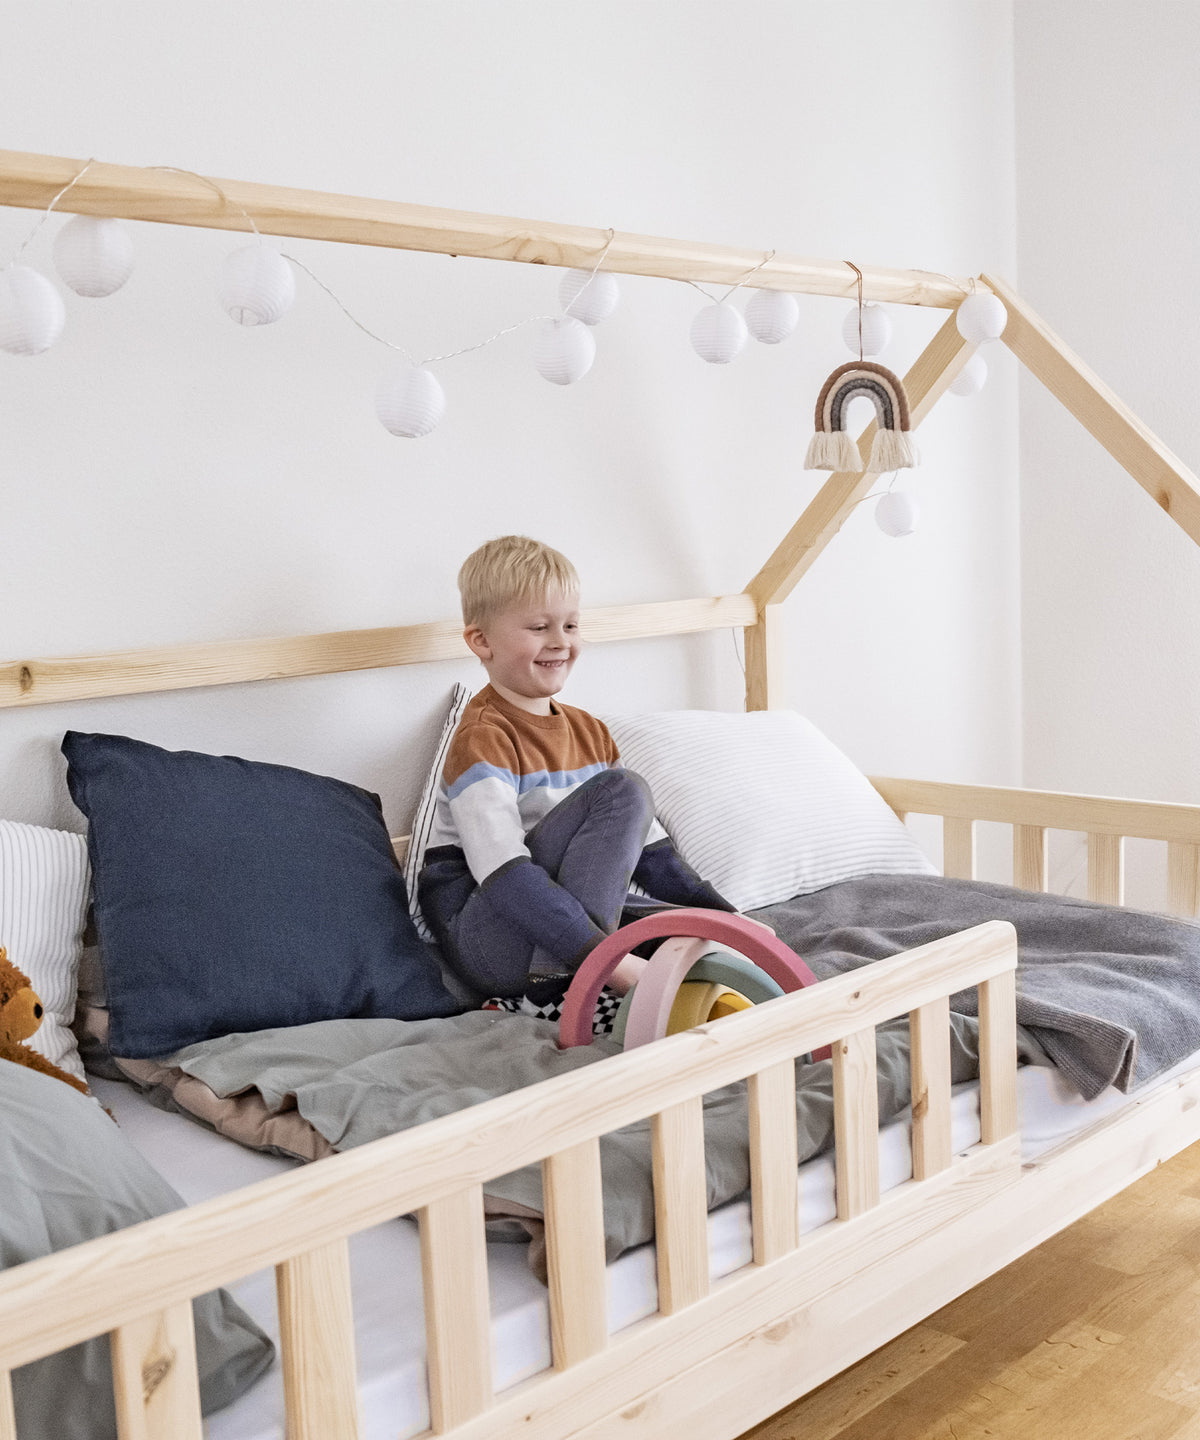 Hausbett mit Rausfallschutz für Kinder, Junge sitzt im Bett und spielt.